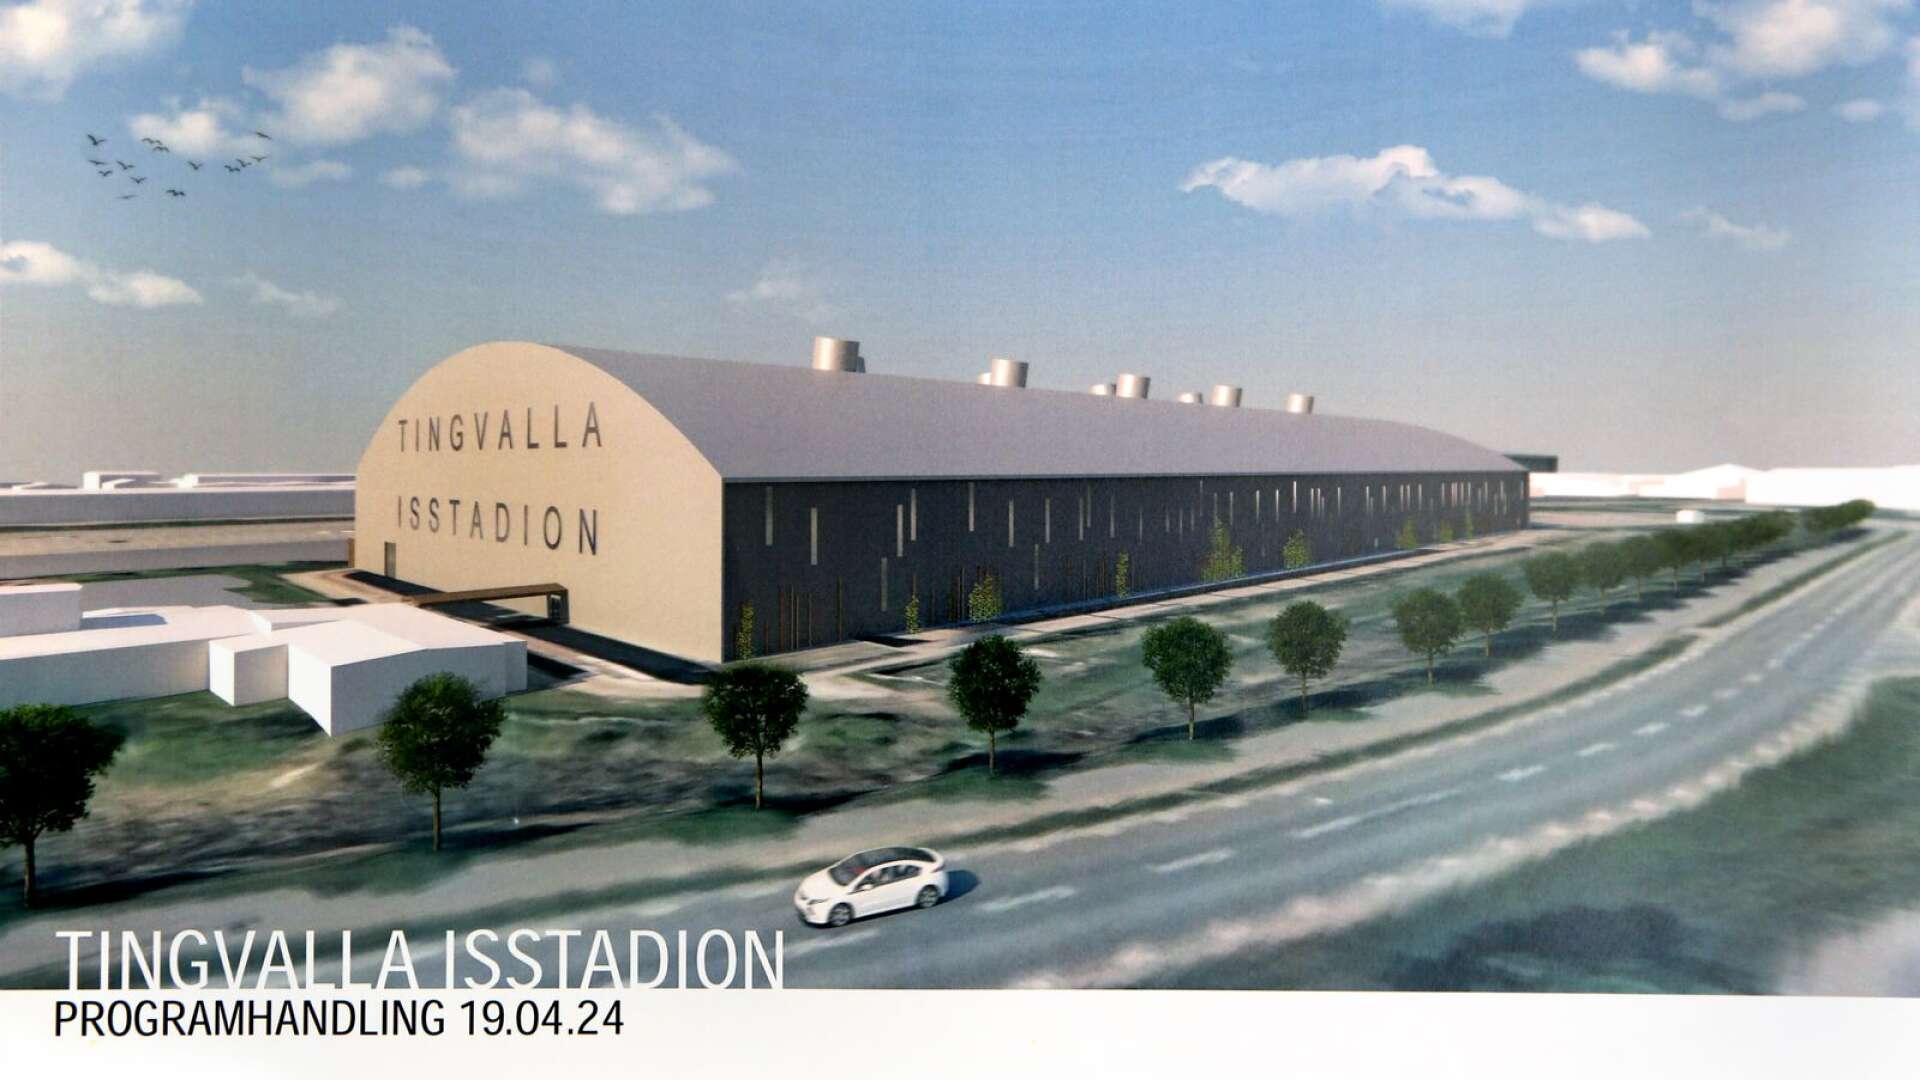 Så här är det tänkt att nya Tingvalla isstadion ska se ut. Här sedd från den östra sidan.